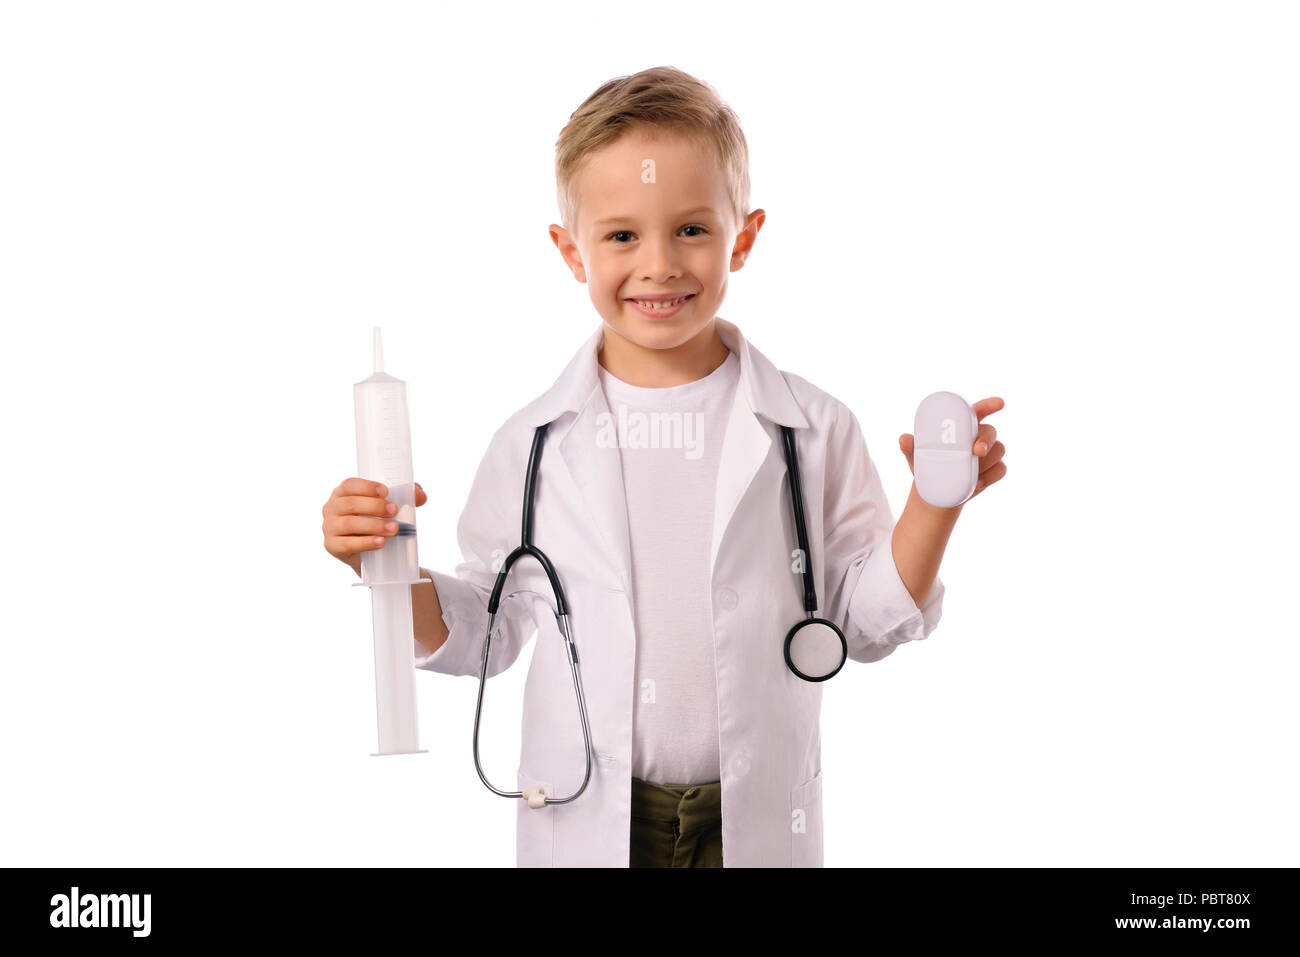 Un petit garçon souriant, médecin en uniforme médical, isolé sur blanc, avec stéthoscope sur le cou, vous rappelle au sujet des soins de santé. Banque D'Images